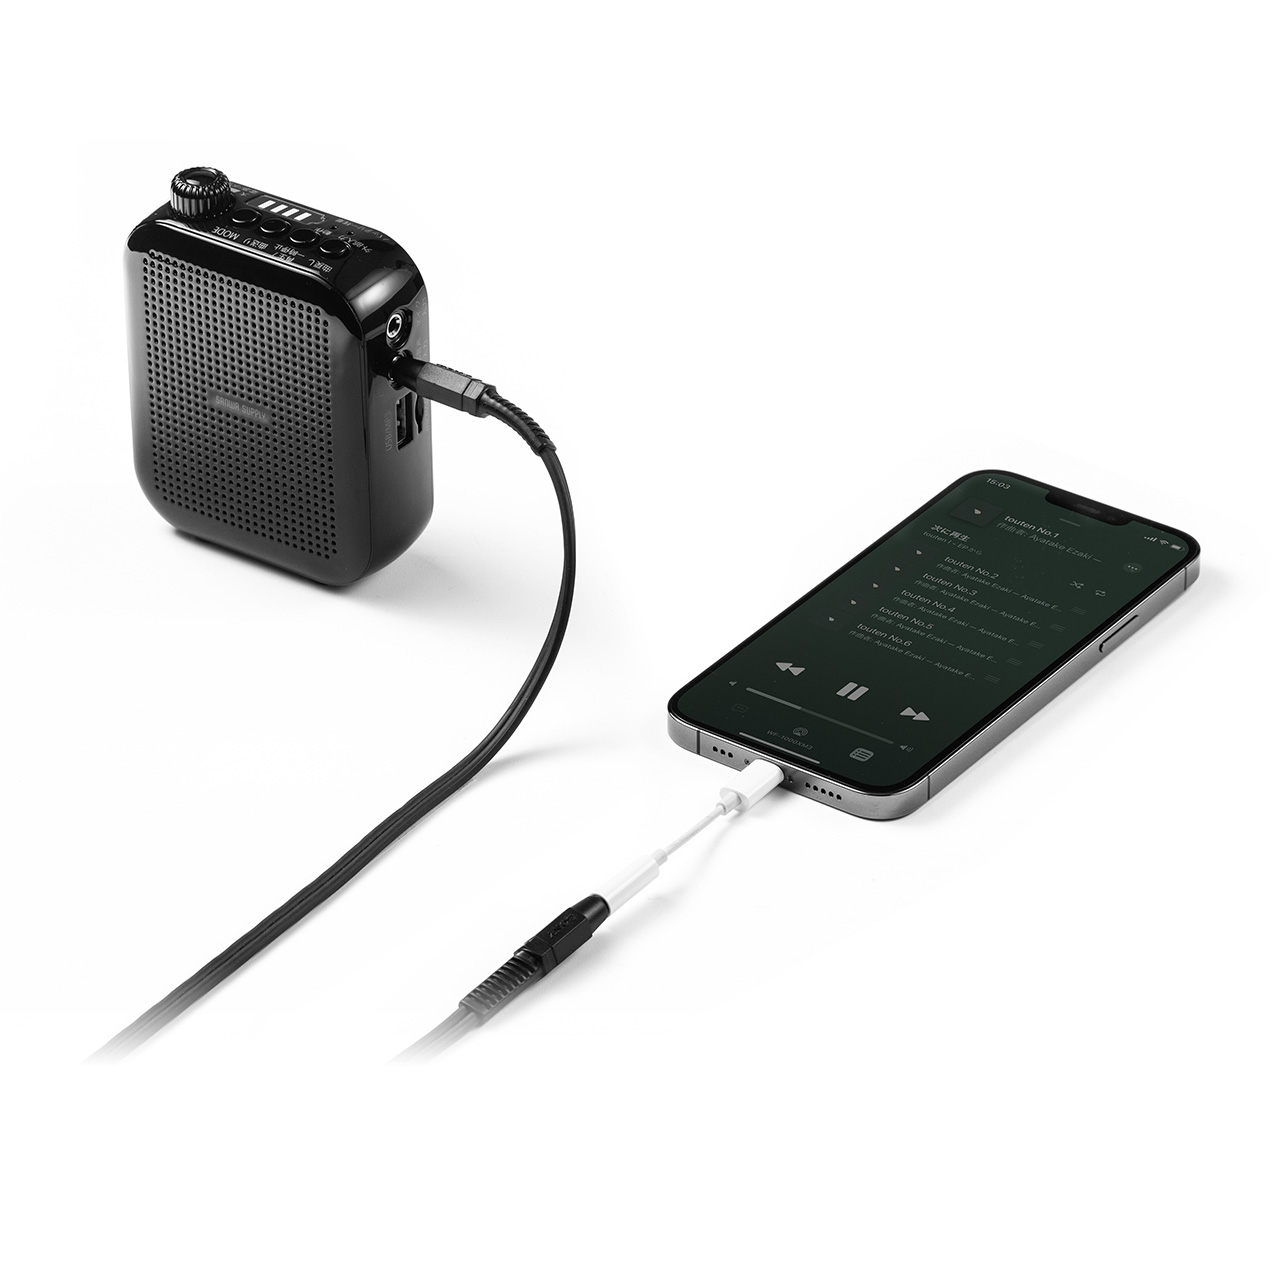 ポータブル拡声器 ハンズフリー ヘッドセットマイク付 スピーカー 音楽再生 10W コンパクト USB充電器付 イベント 店頭販売 選挙 400-SP105